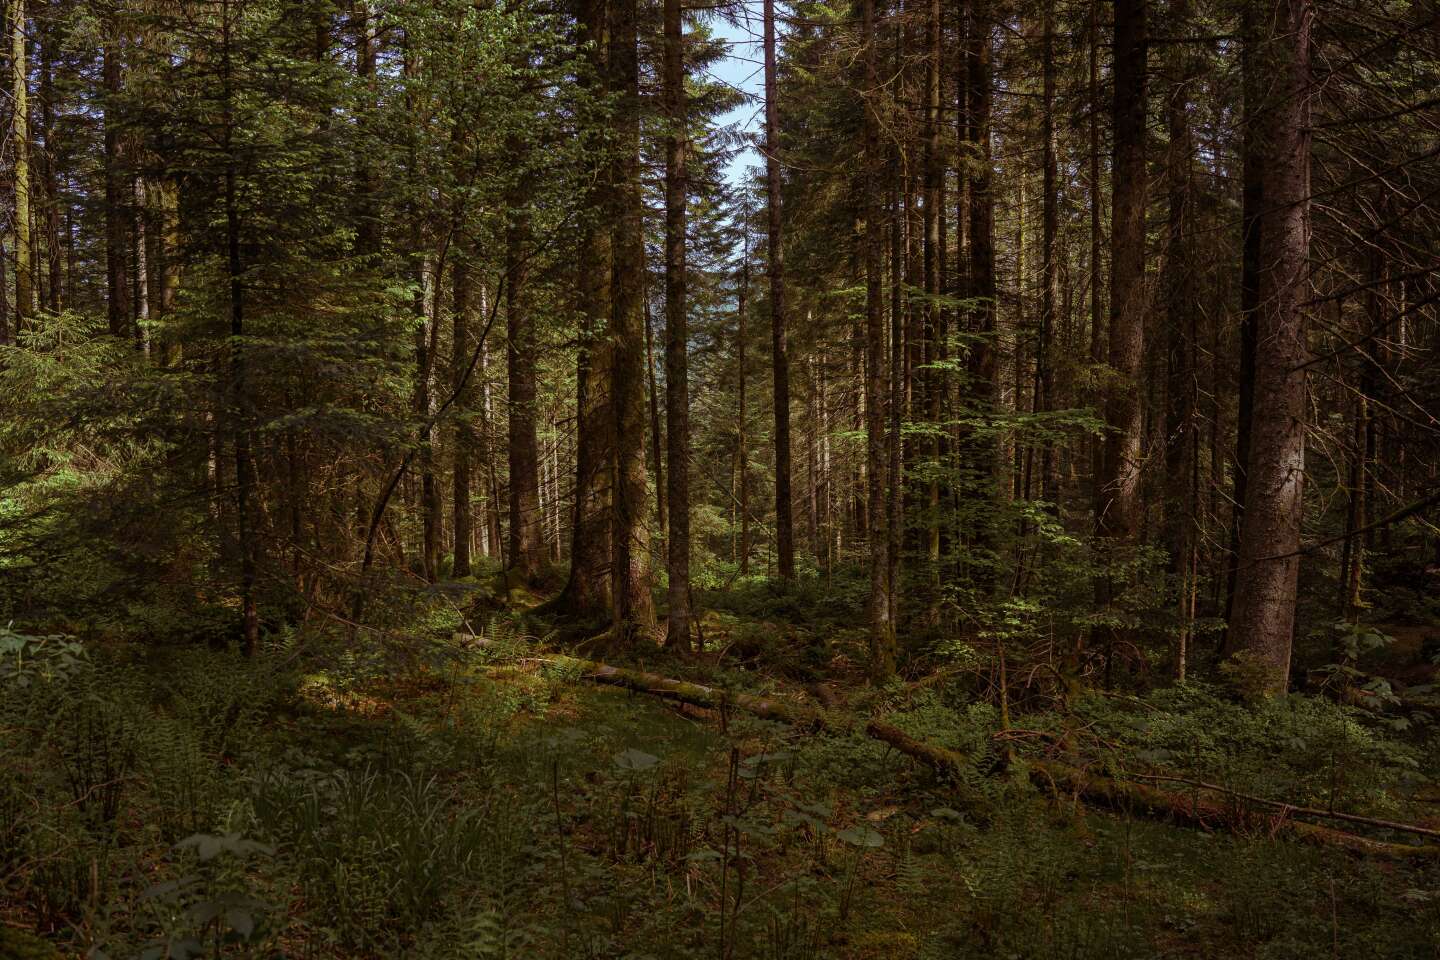 Climat : « La forêt ne peut pas être un puits infini de carbone »